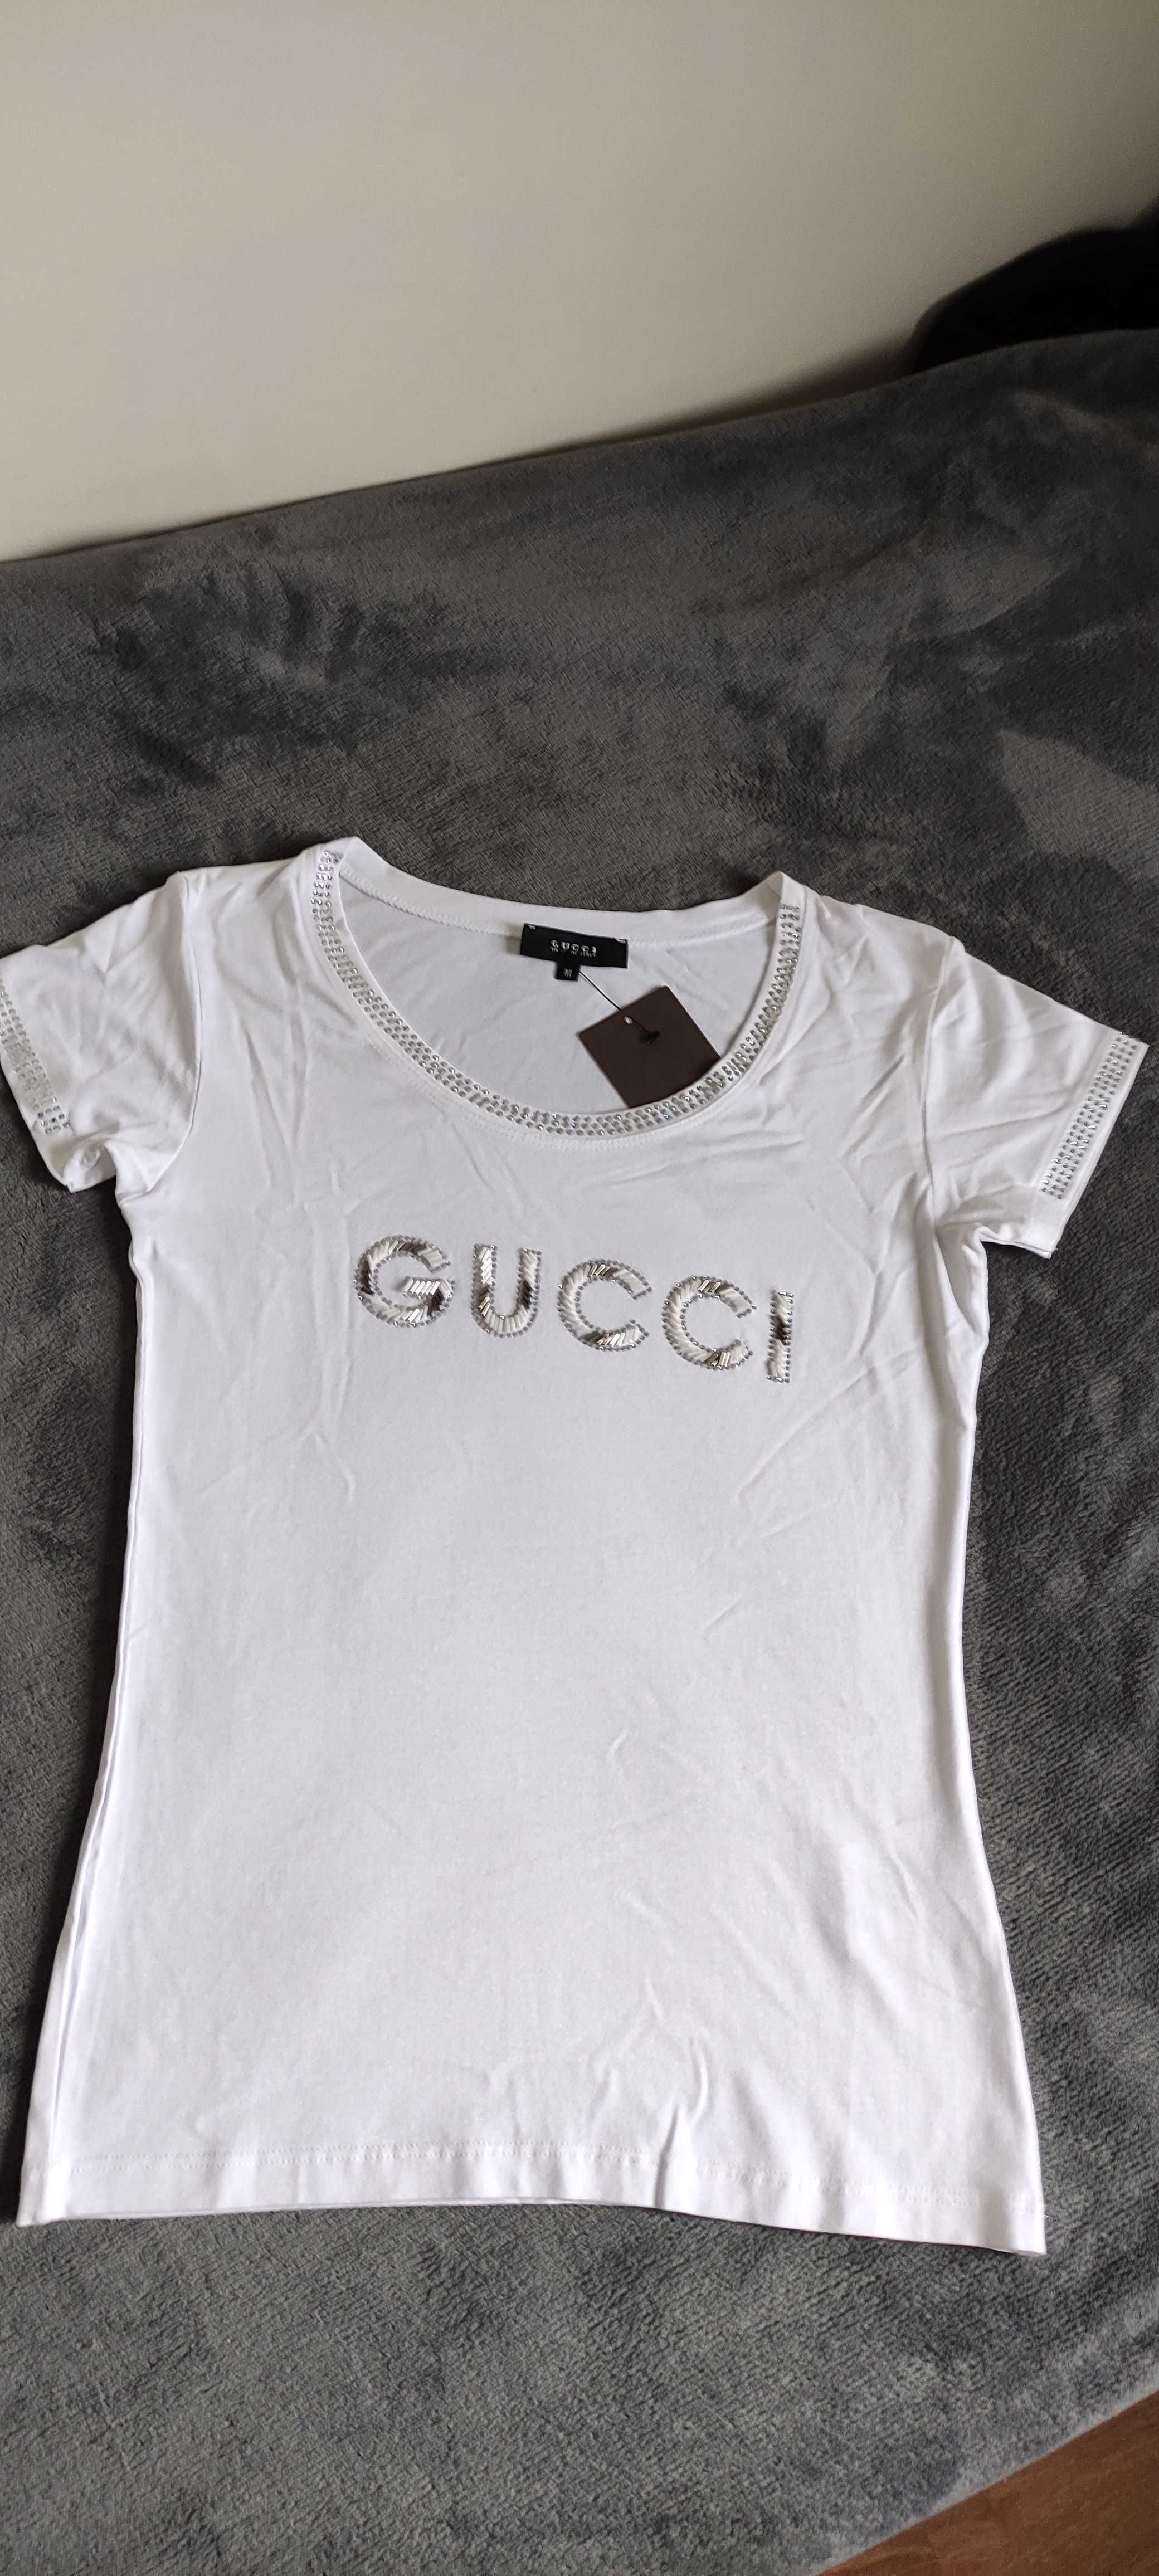 T-shirt biały Gucci nowy z metką damski koszulka wiosna/lato